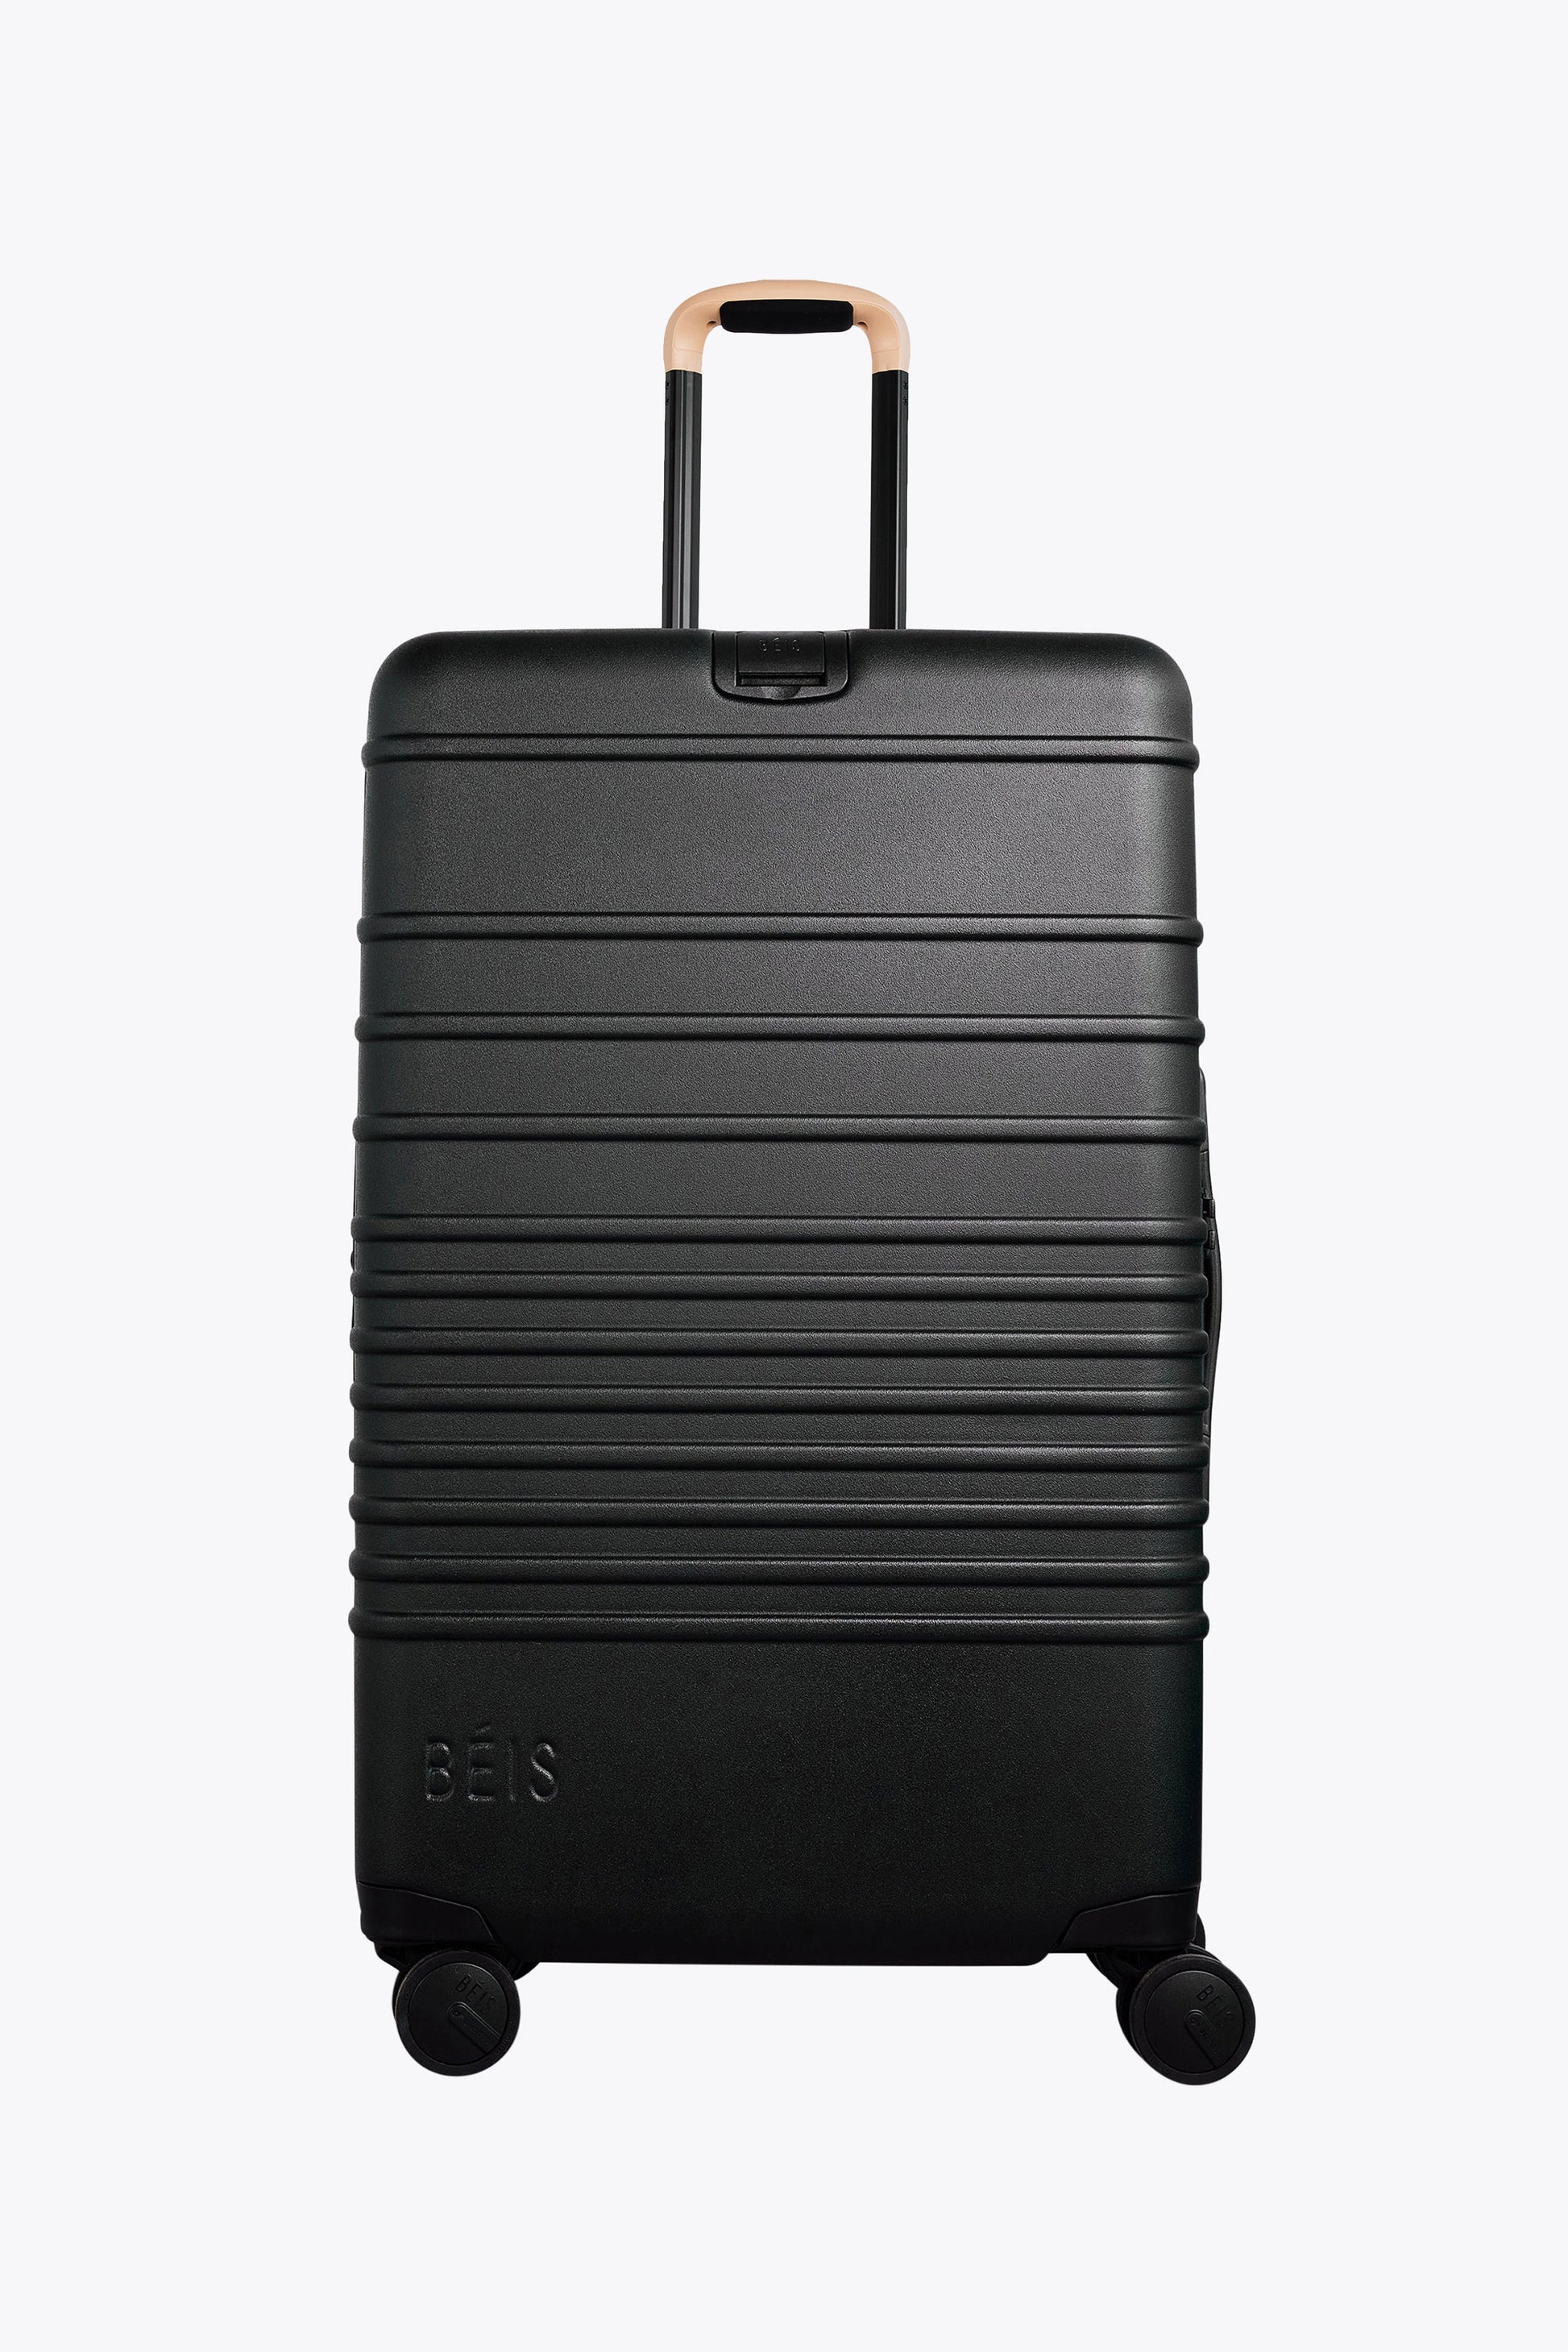 Rimowa Rimowa Classic Check-In M 27 Luggage-Silver (Luggage,26-29  Luggage)